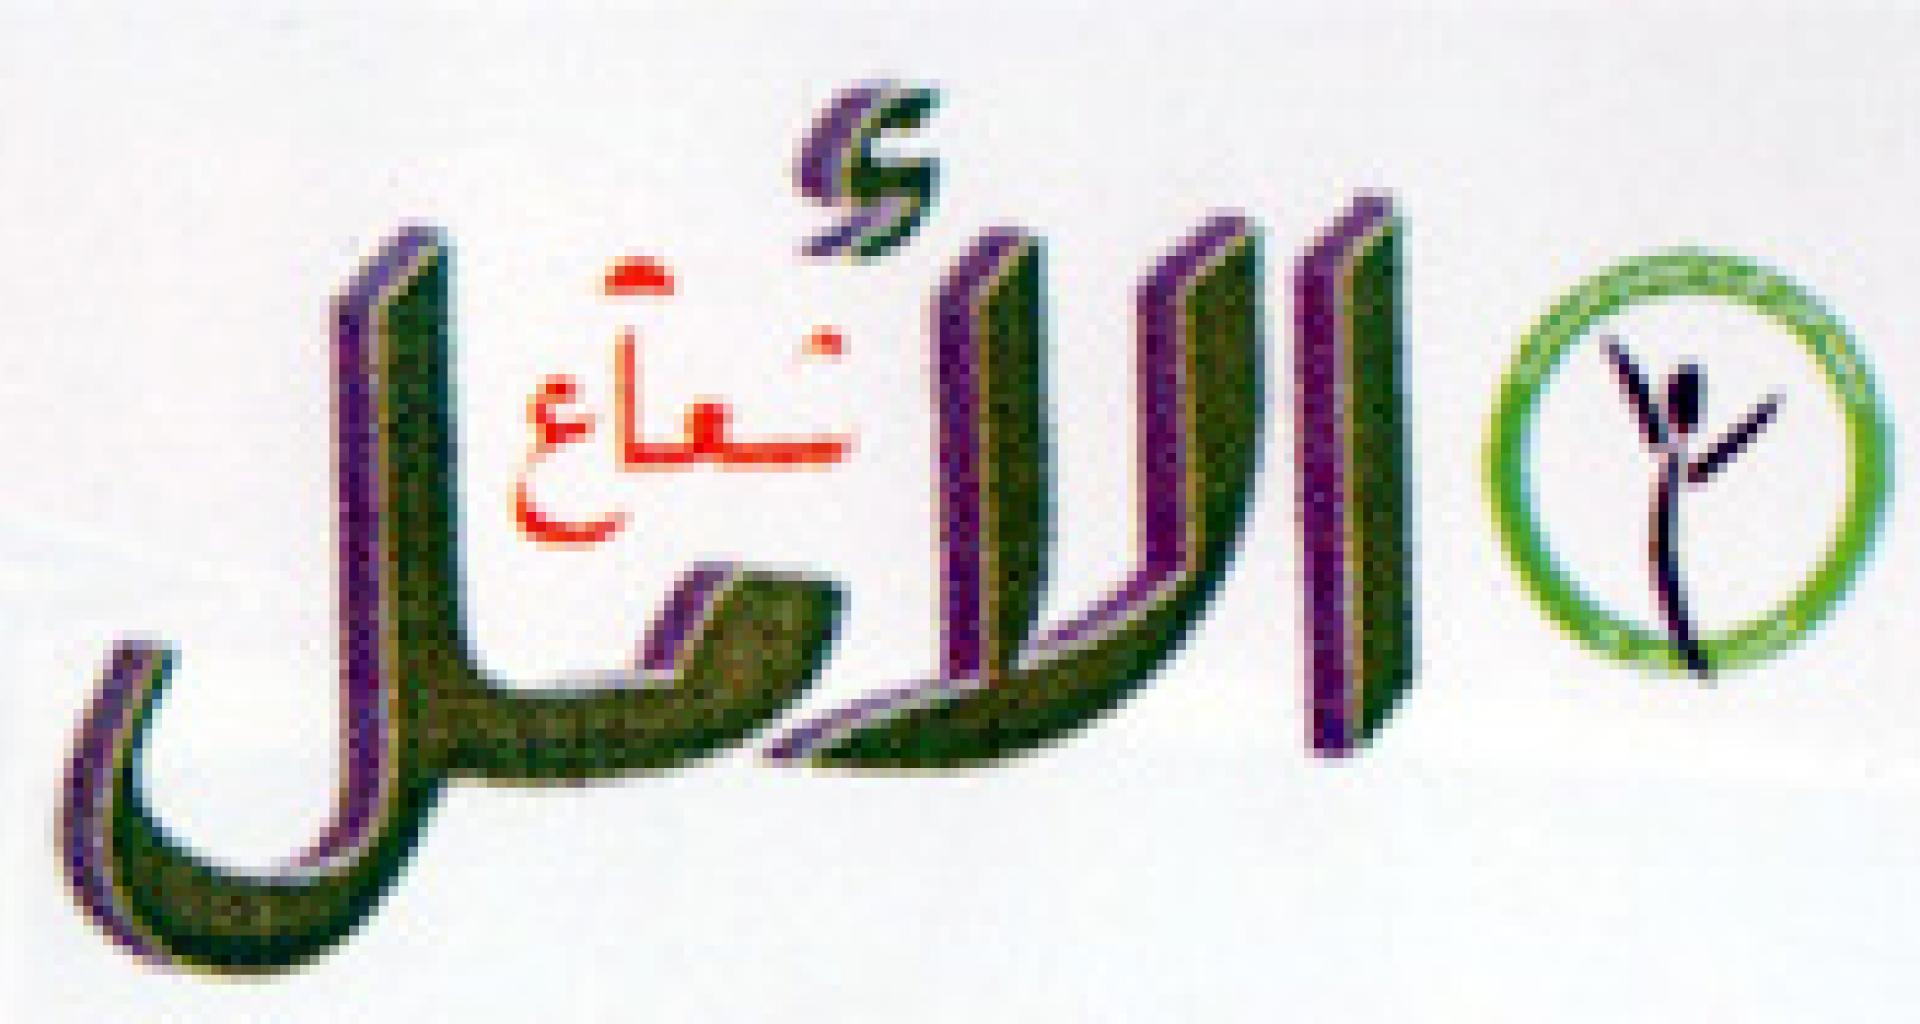 شعار المجلة 